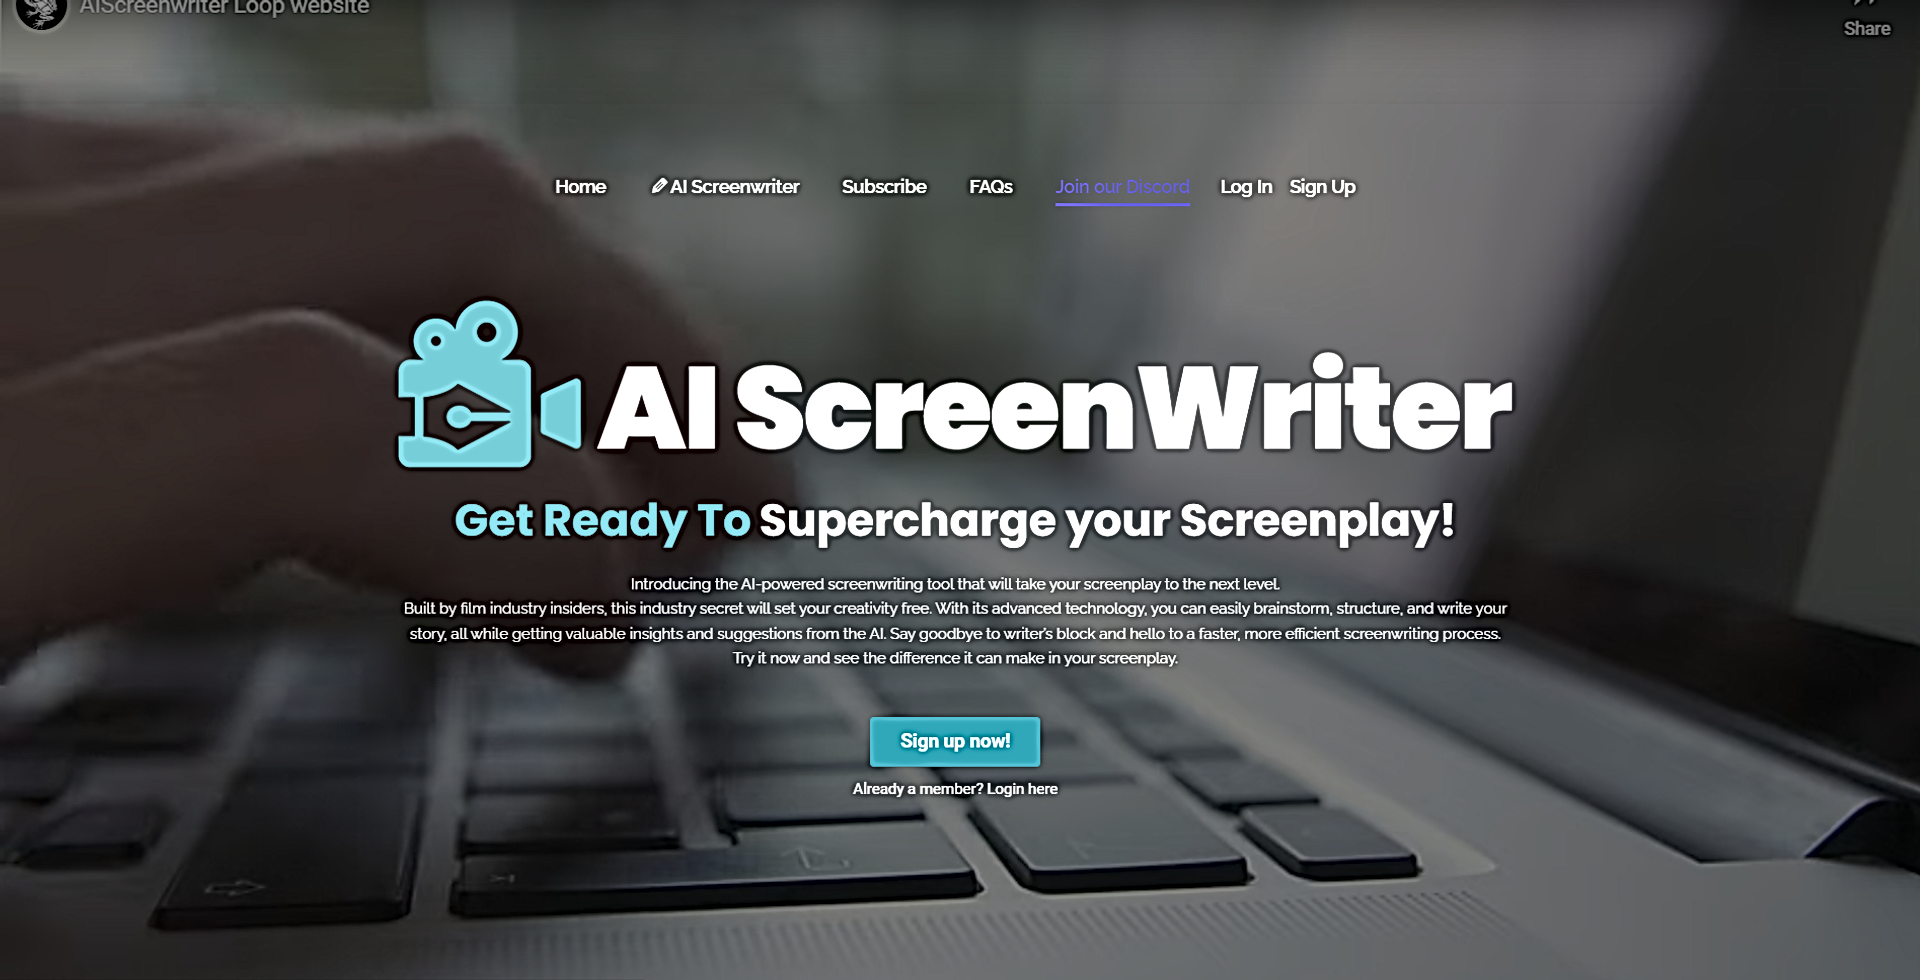 AI Screenwriter featured